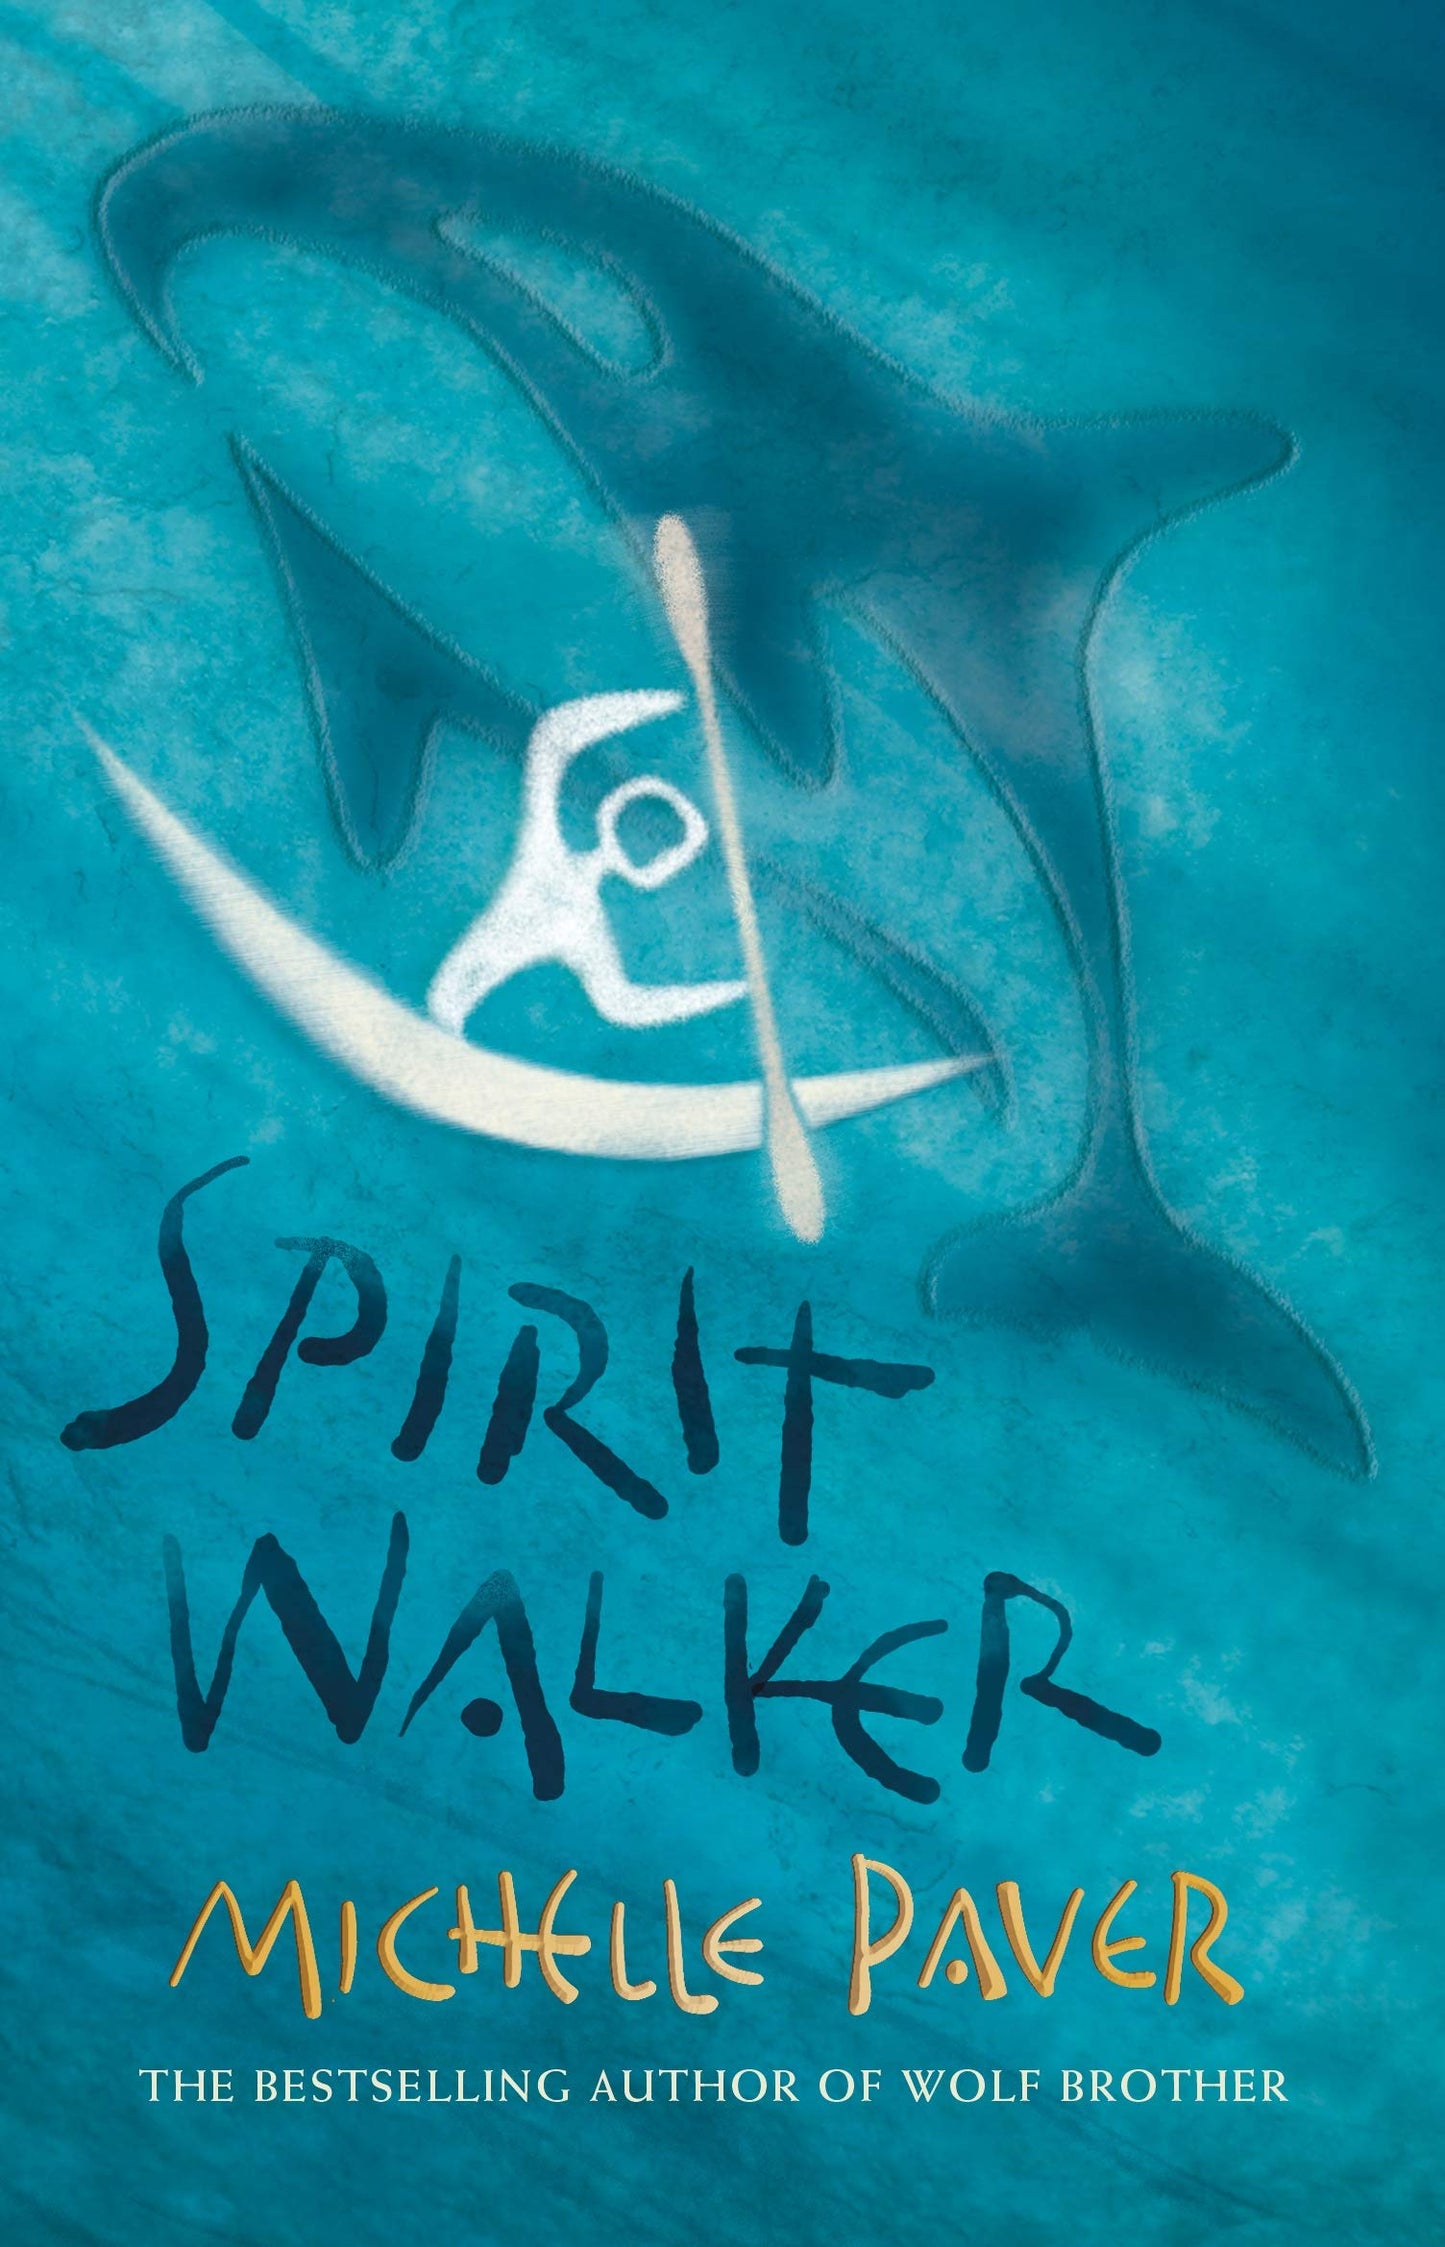 Spirit Walker by Michelle Paver